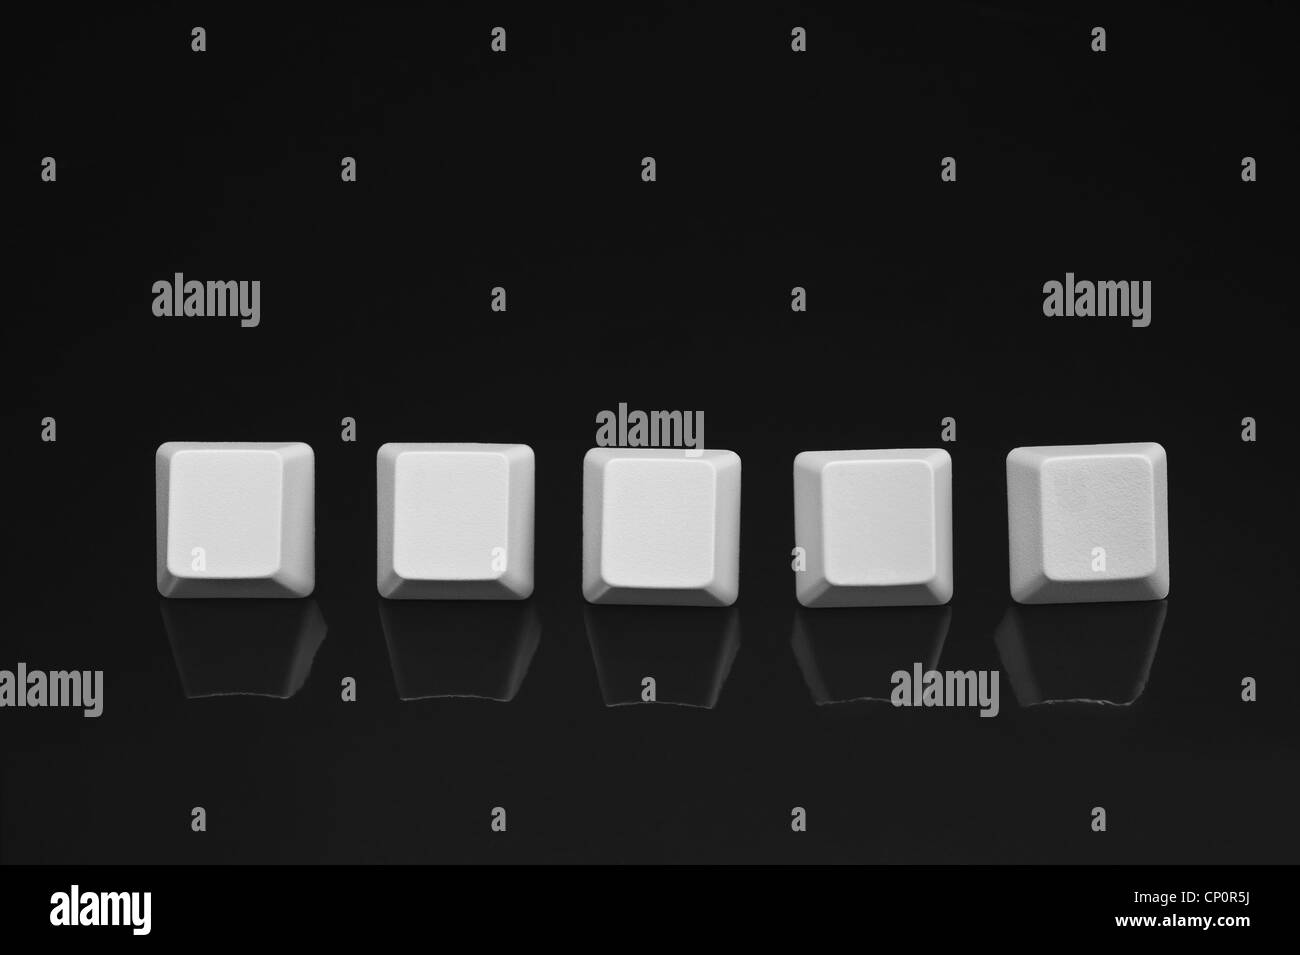 Ein Satz von fünf leere Computer-Tastatur-Tasten auf eine schwarze Fläche. Stockfoto